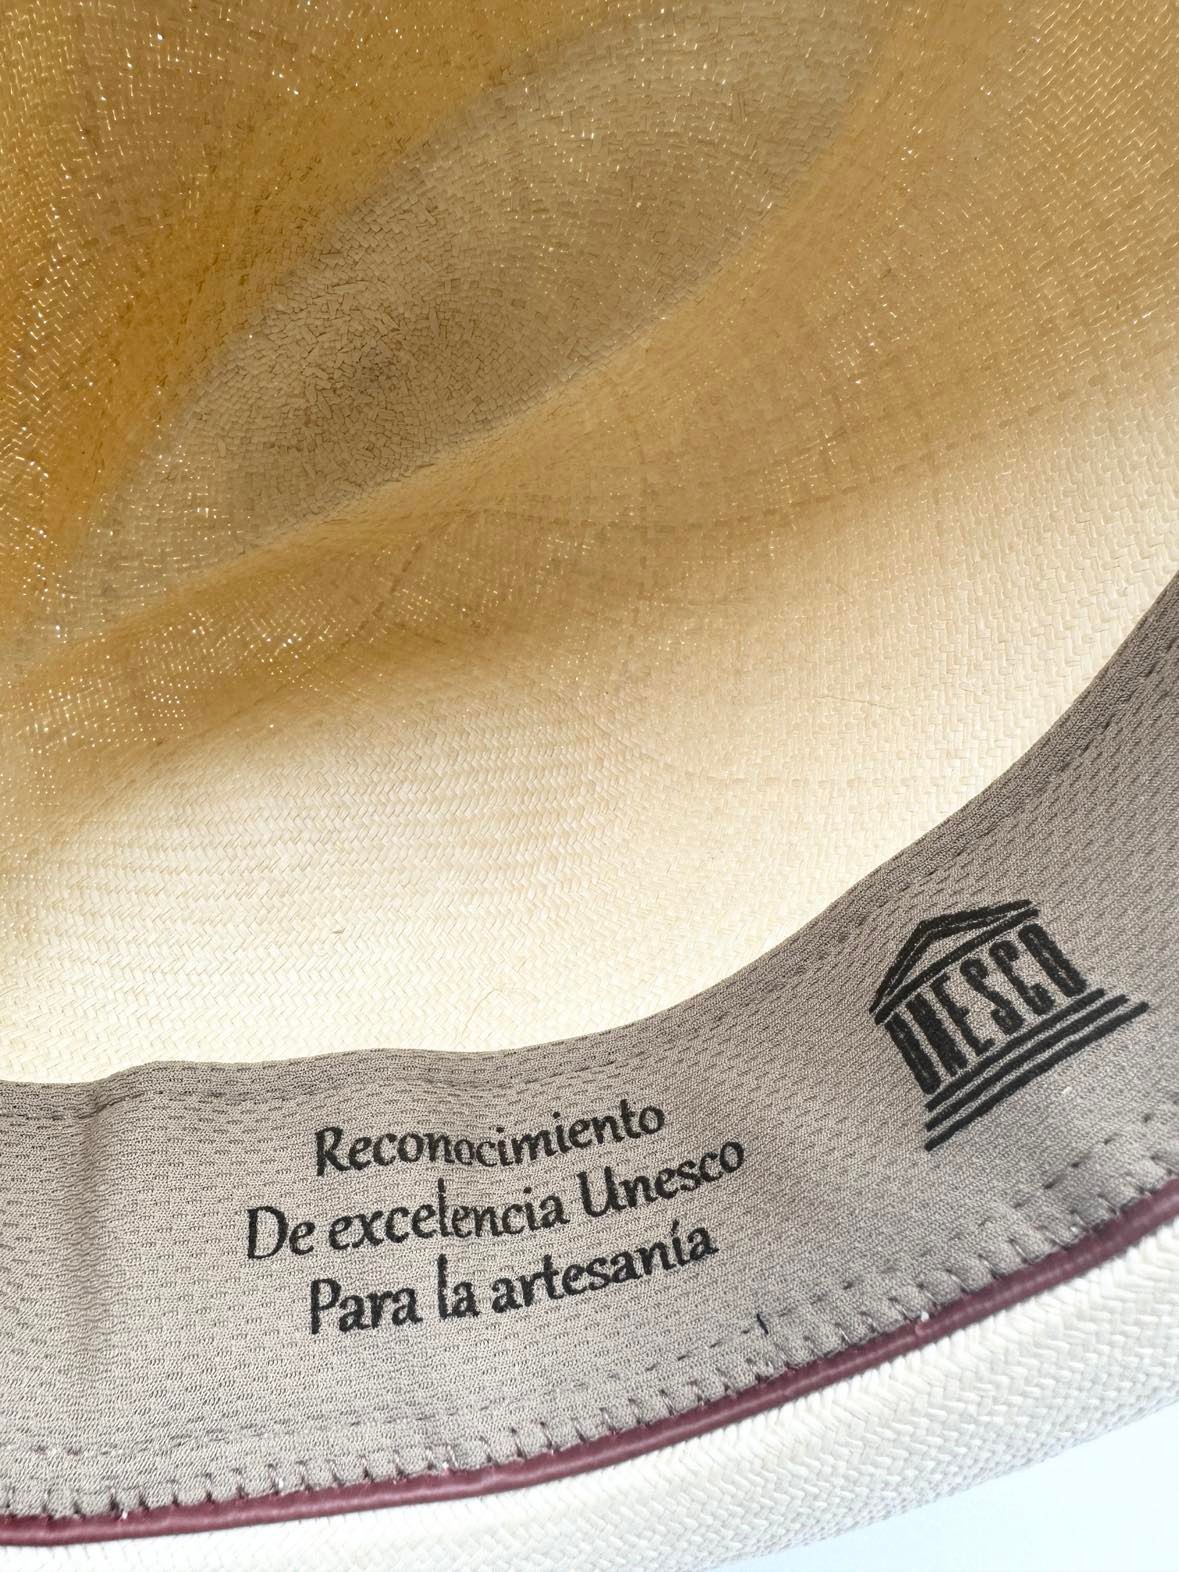 Certificering i inderforet viser Montecristi Panama hattens ægtehed.